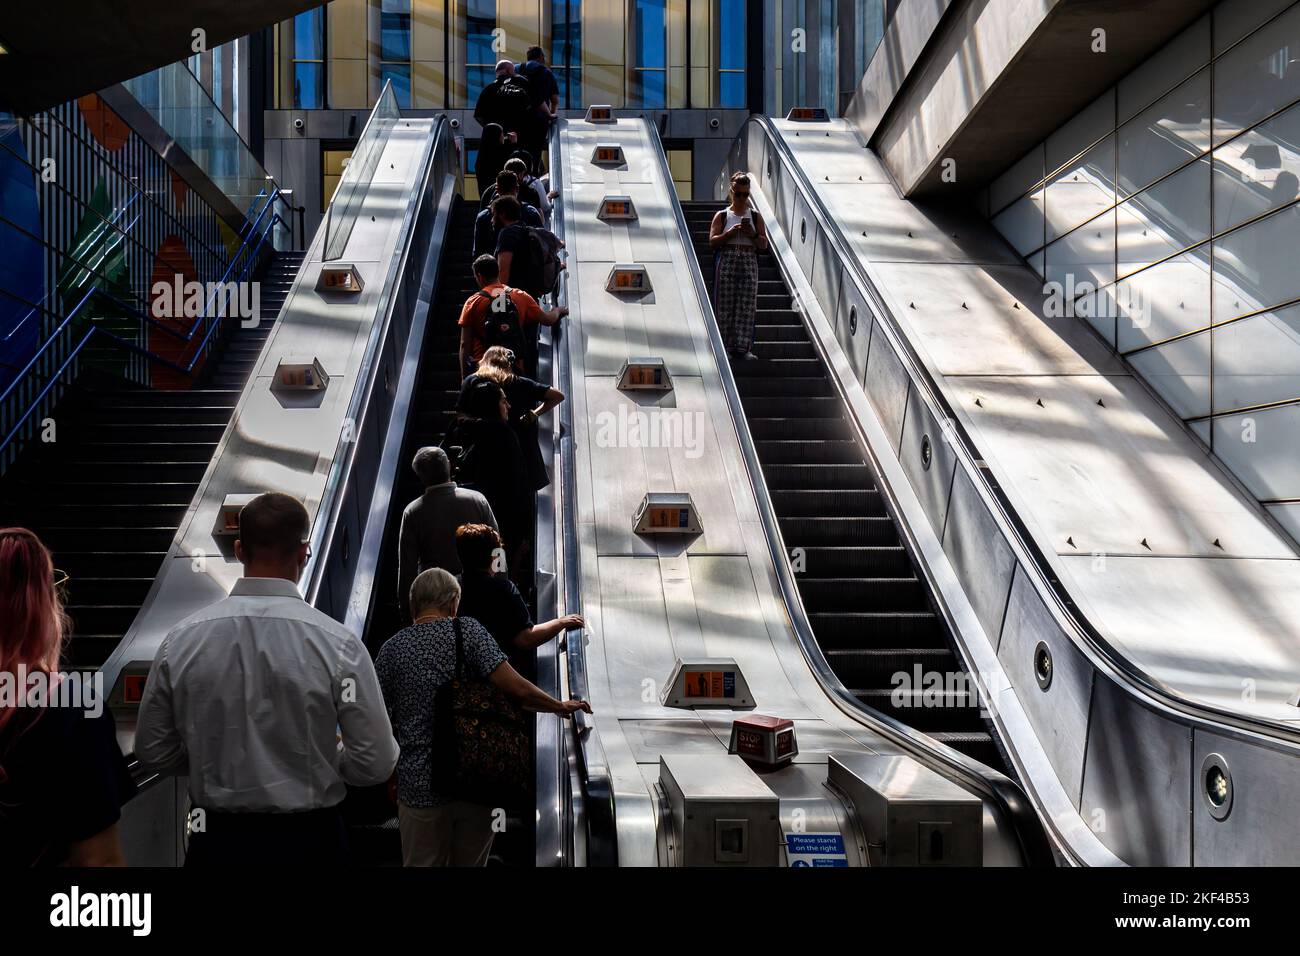 Escaliers roulants sur le métro Tottenham court avec éclairage latéral spectaculaire transportant plusieurs passagers en début de matinée pour travailler. Banque D'Images